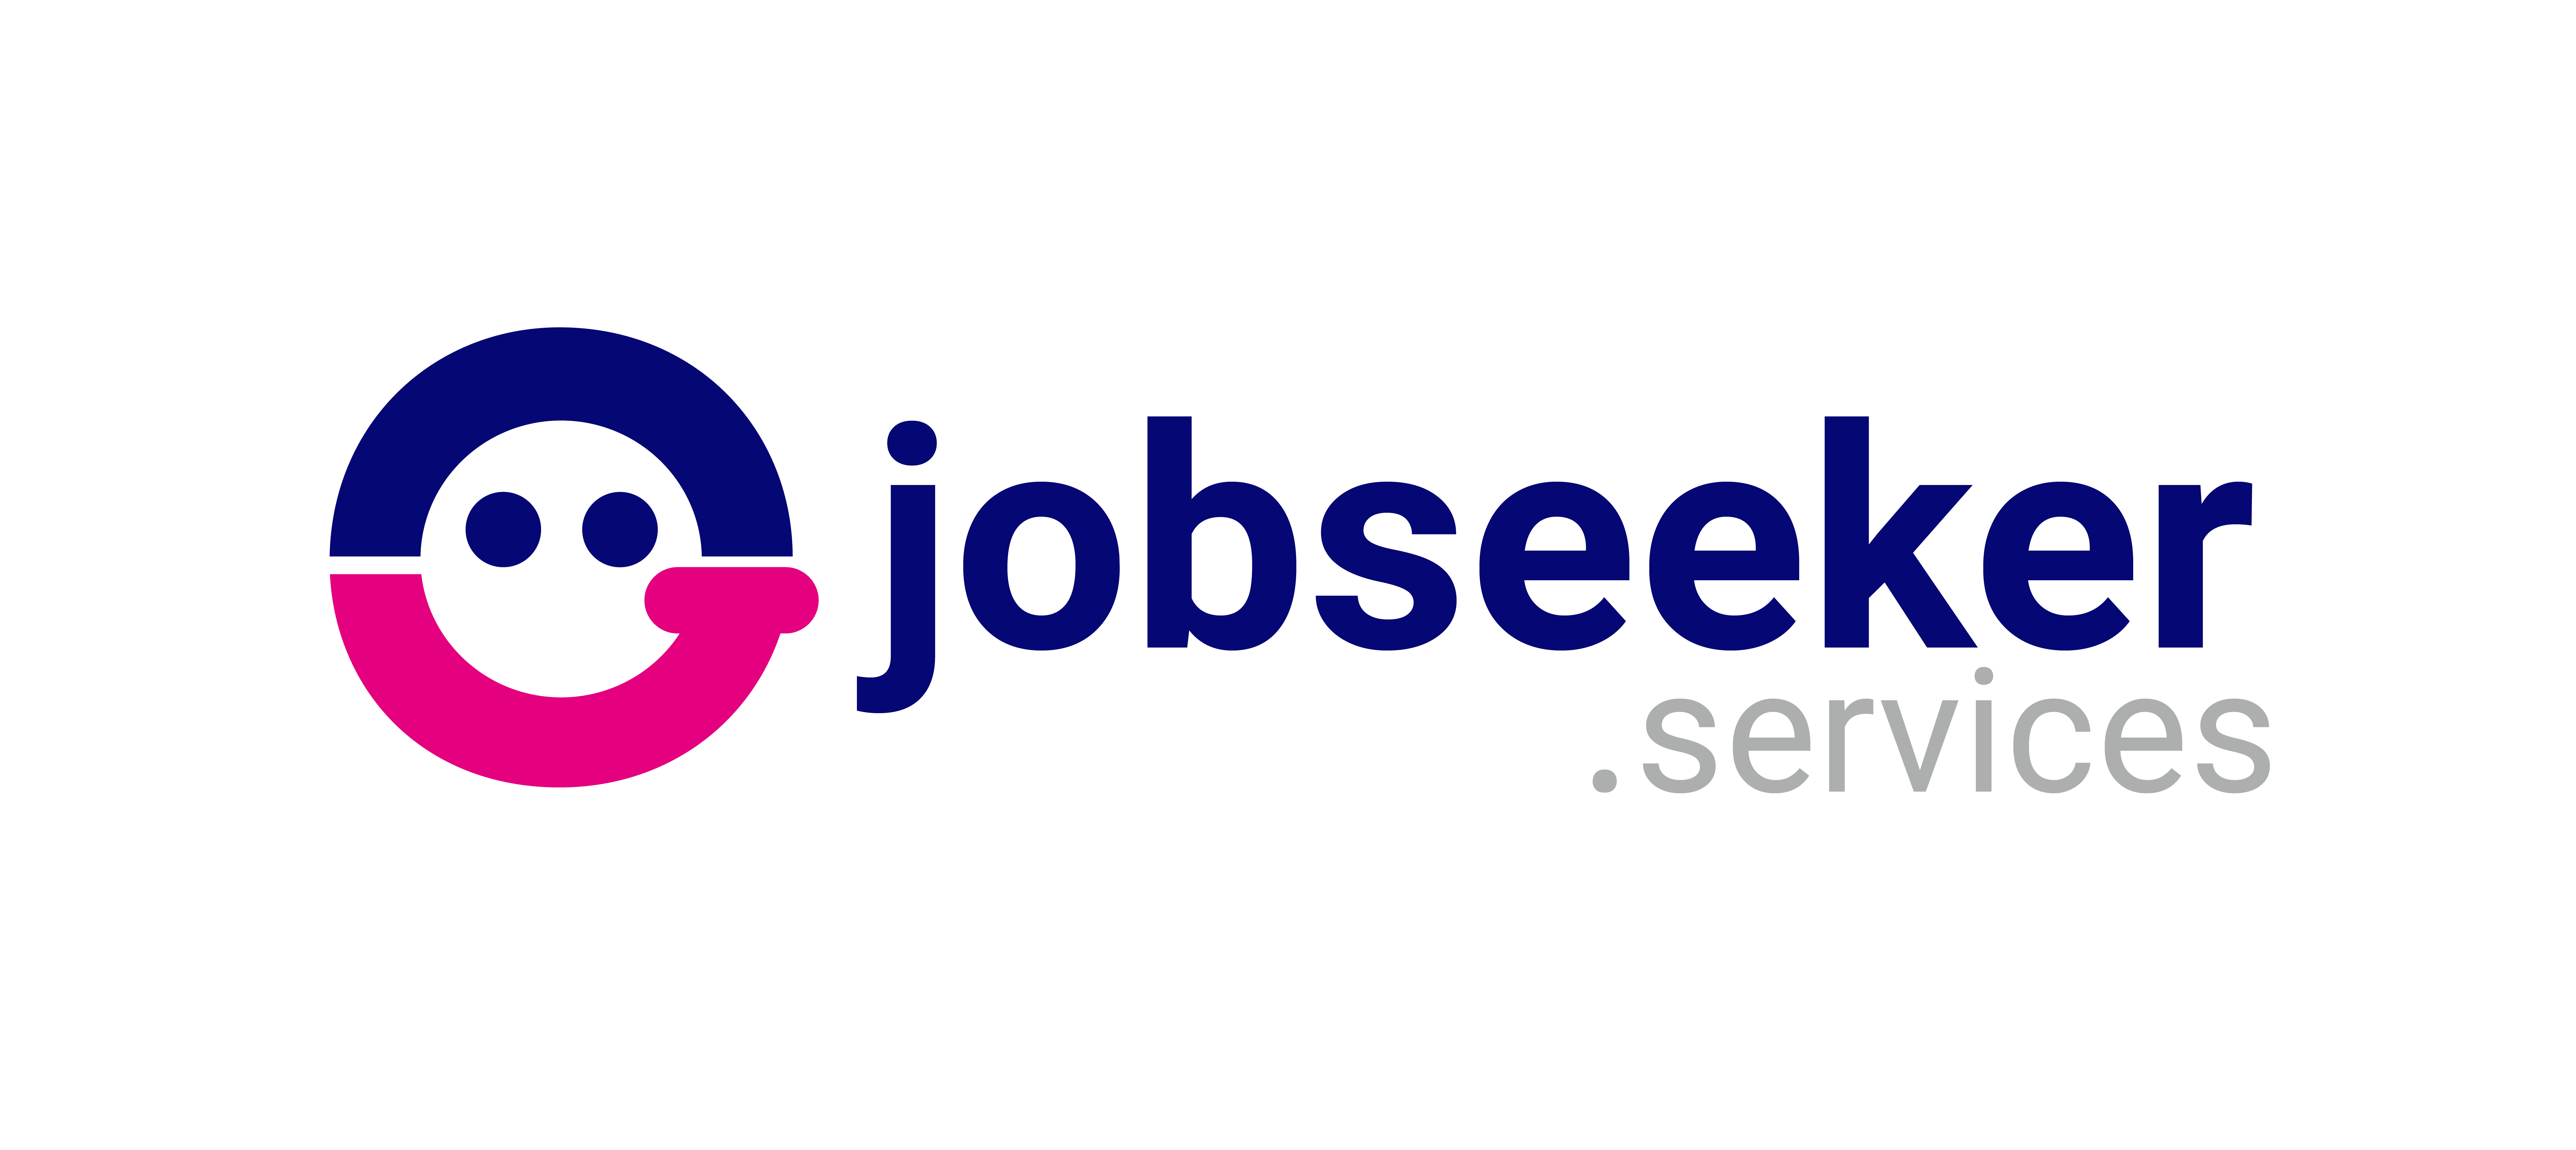 Jobseeker Services